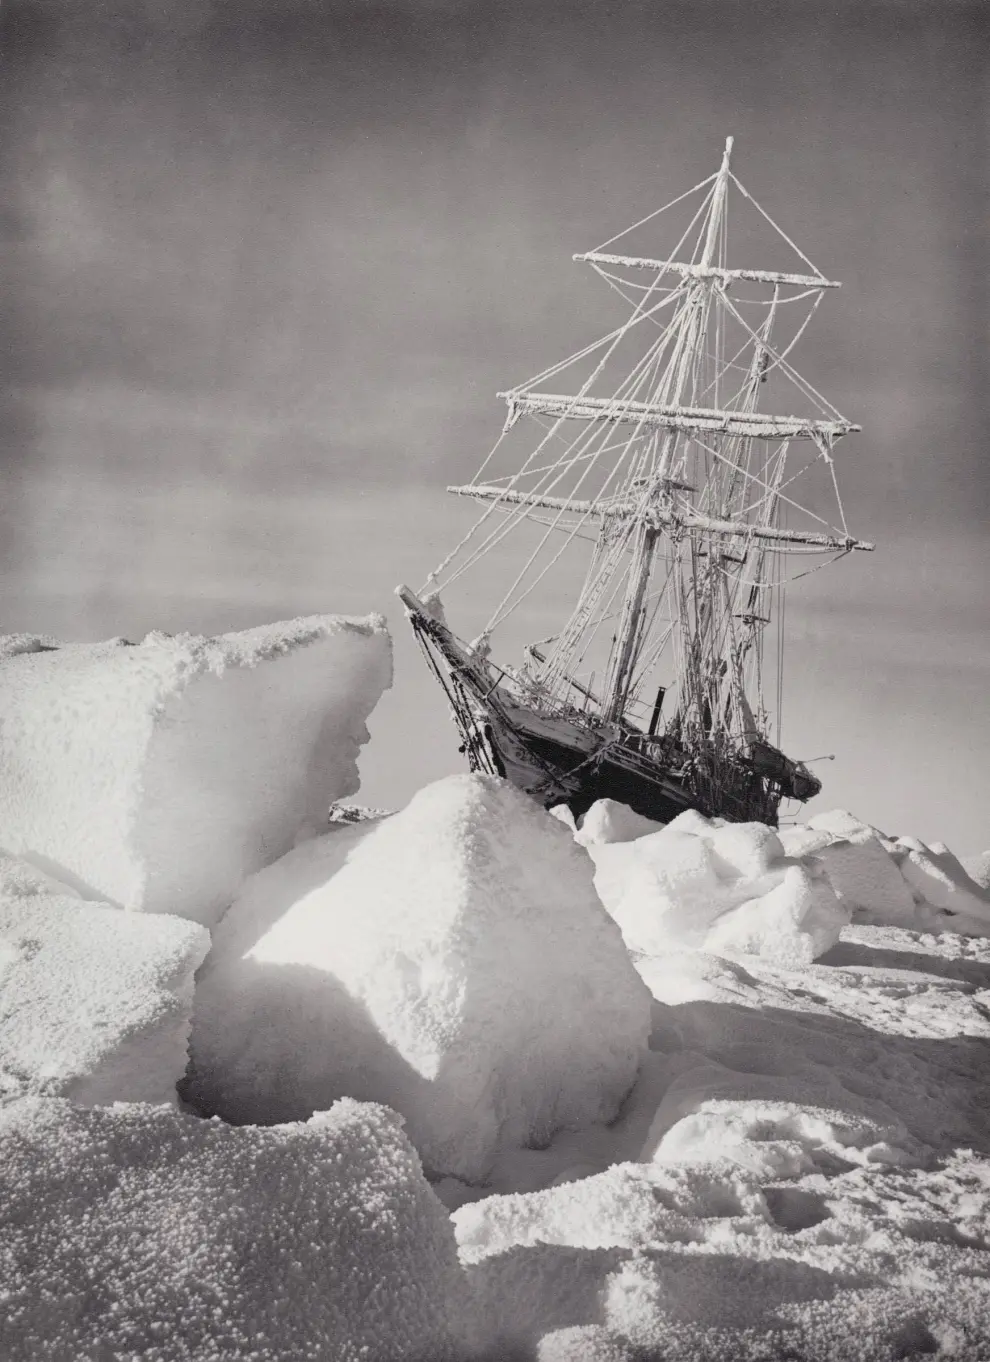 El endurance atrapado en el hielo - Frank Hurley (1915)